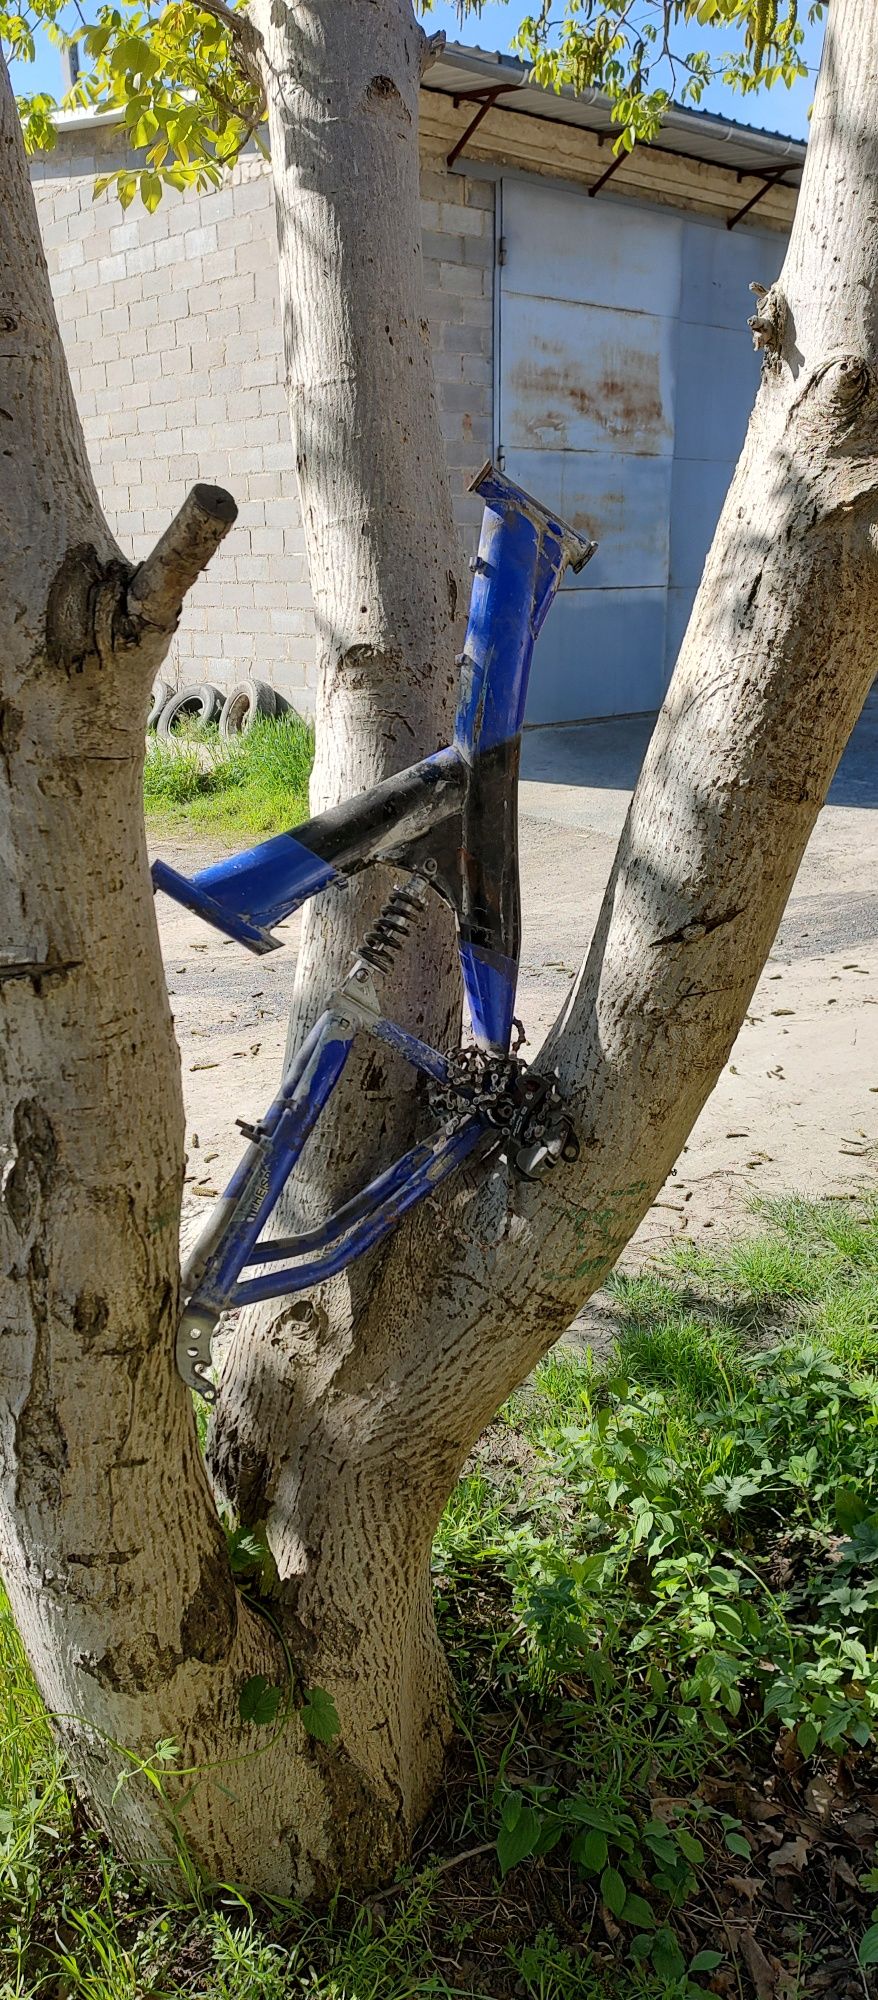 Рама і колеса від велосипеда